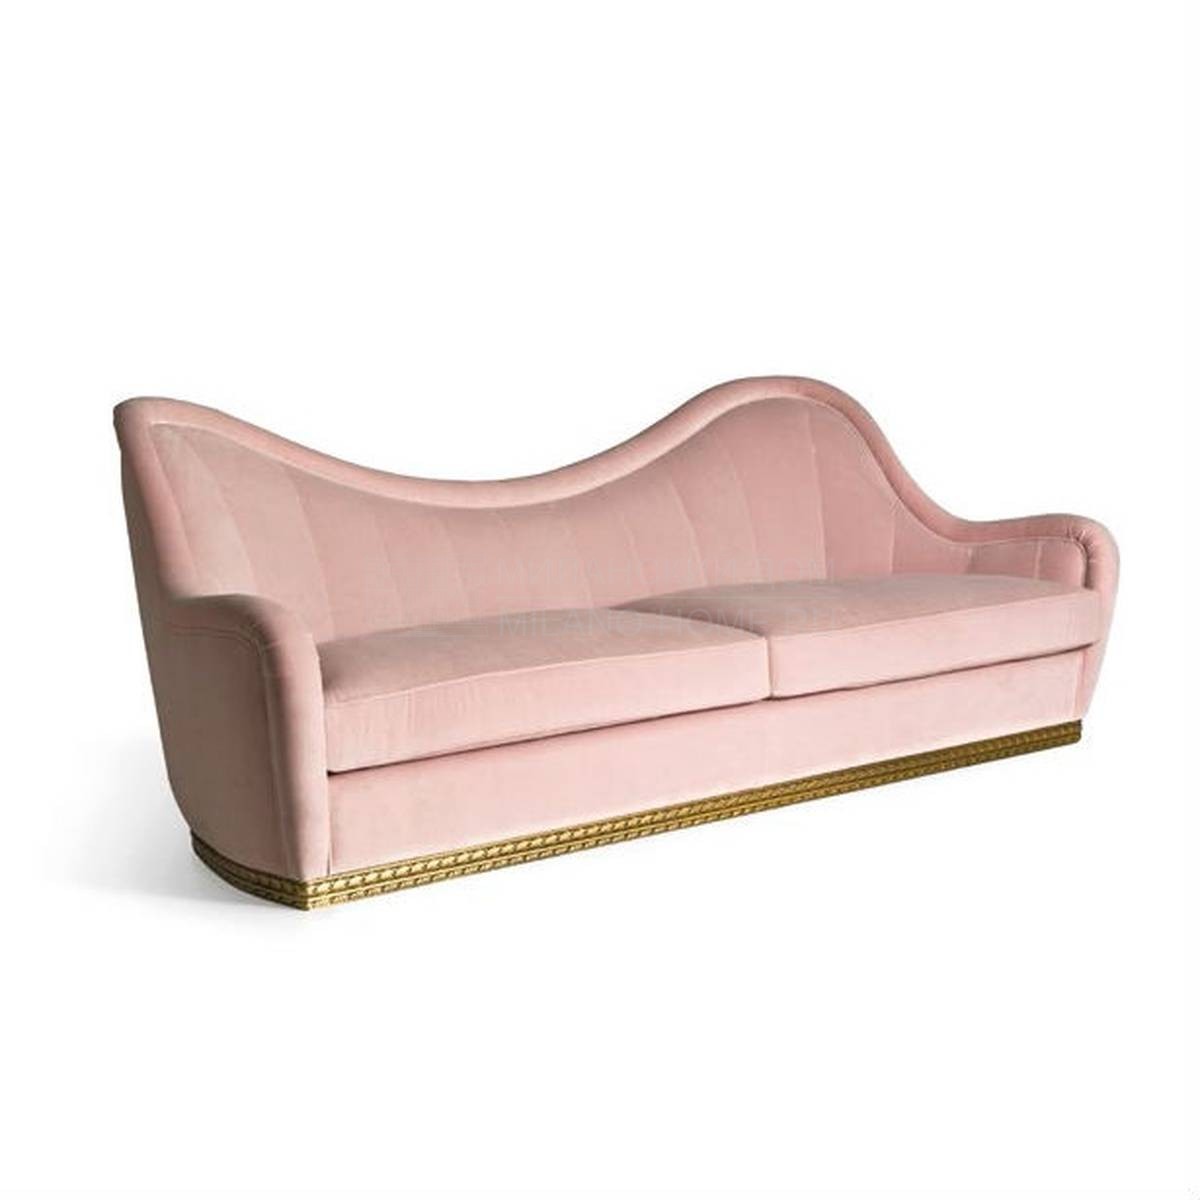 Прямой диван Art. 34105 / D3 sofa из Италии фабрики ANGELO CAPPELLINI 